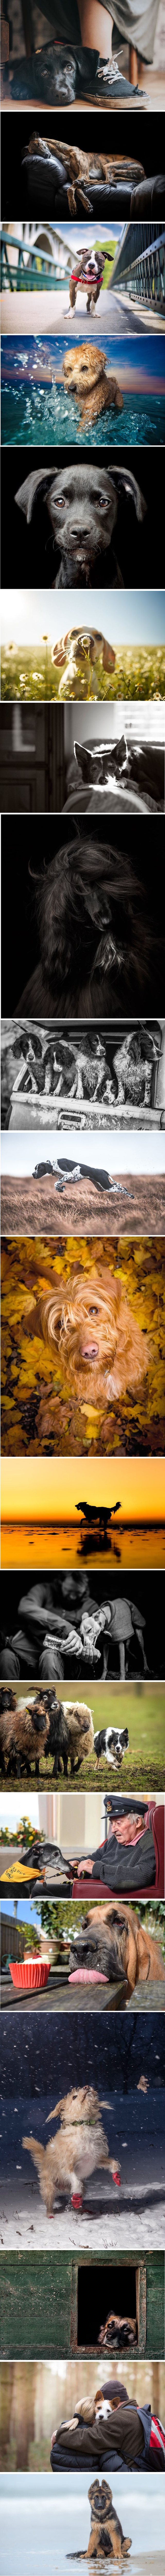 Kennel Club izbacio je najbolje ovogodišnje fotografije pasa i to je najslađa stvar koju ćete danas vidjeti